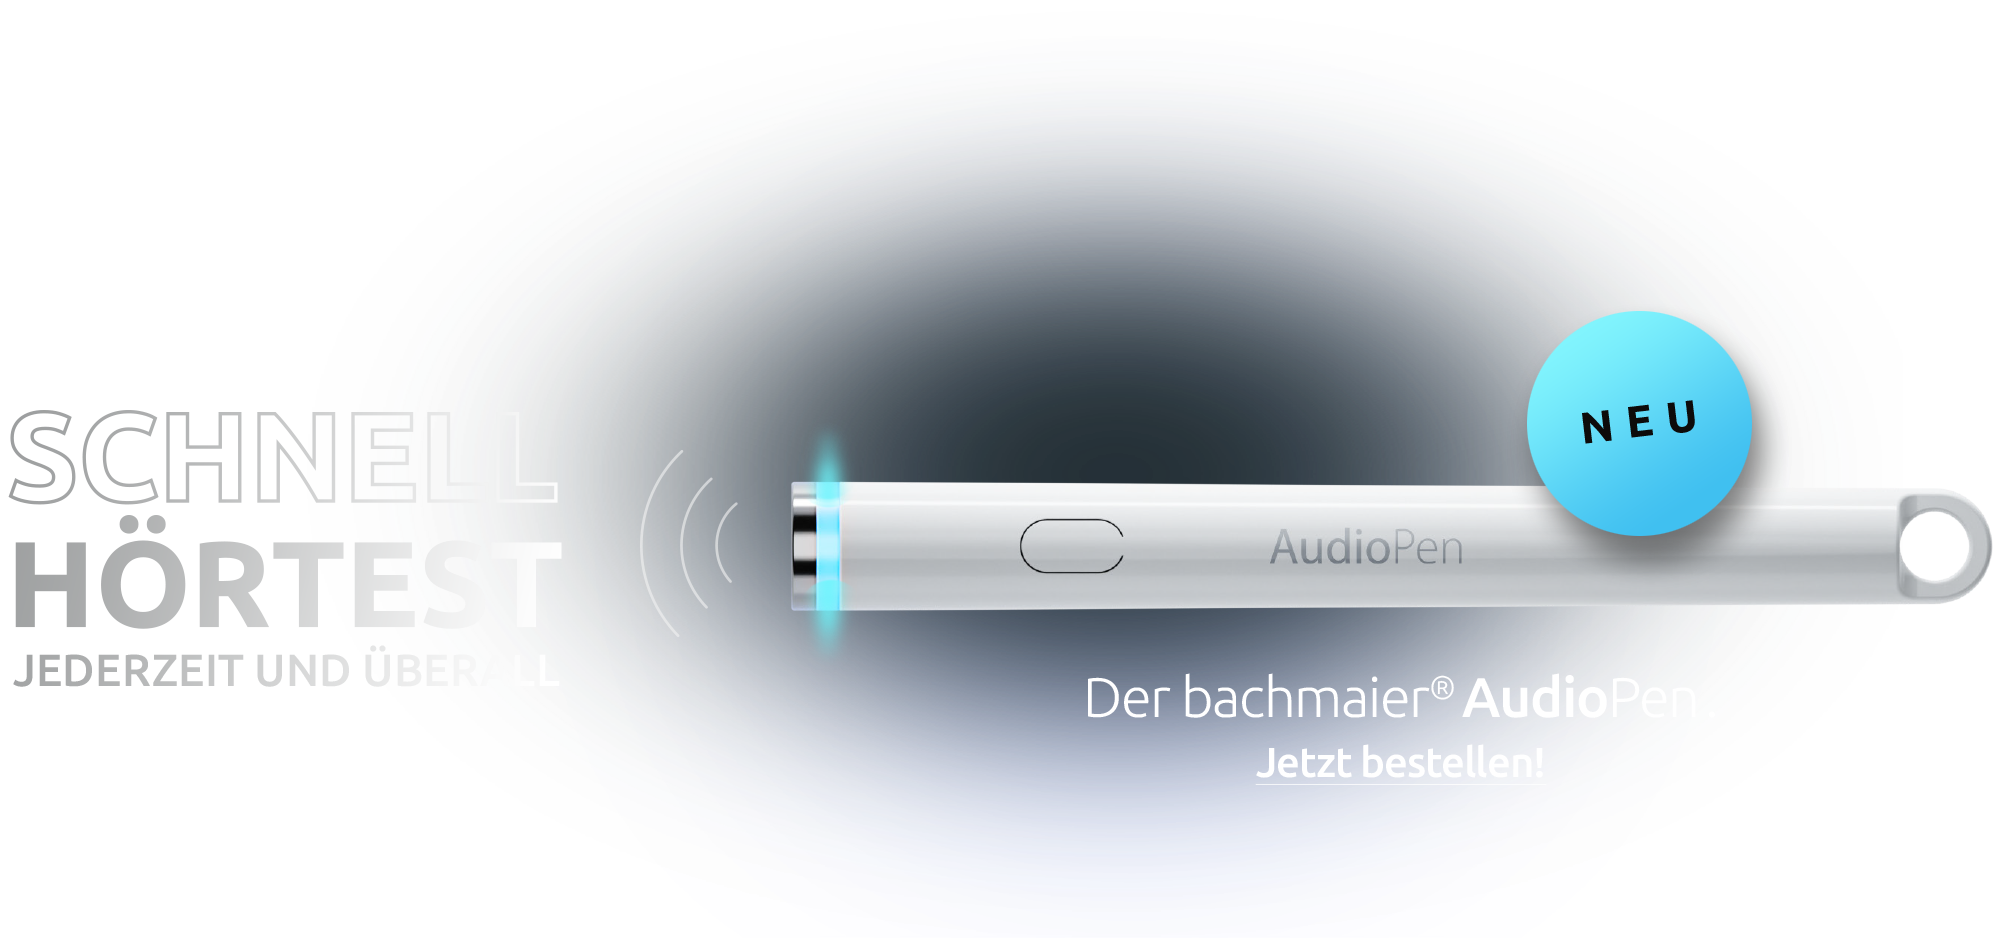 NEU: Der bachmaier AudioPen!